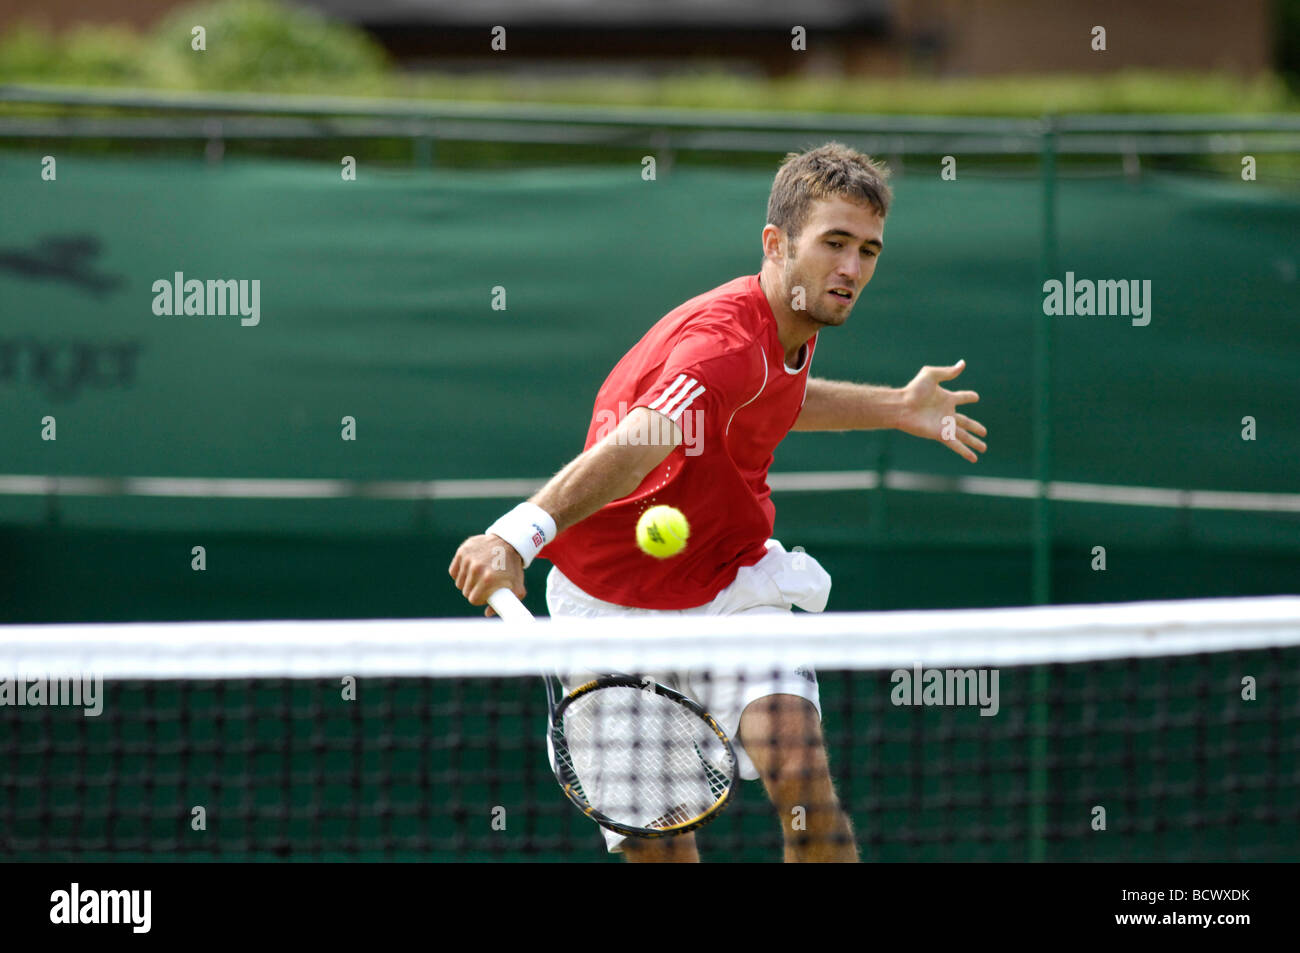 Tennis player renvoie la balle sauvé Banque D'Images